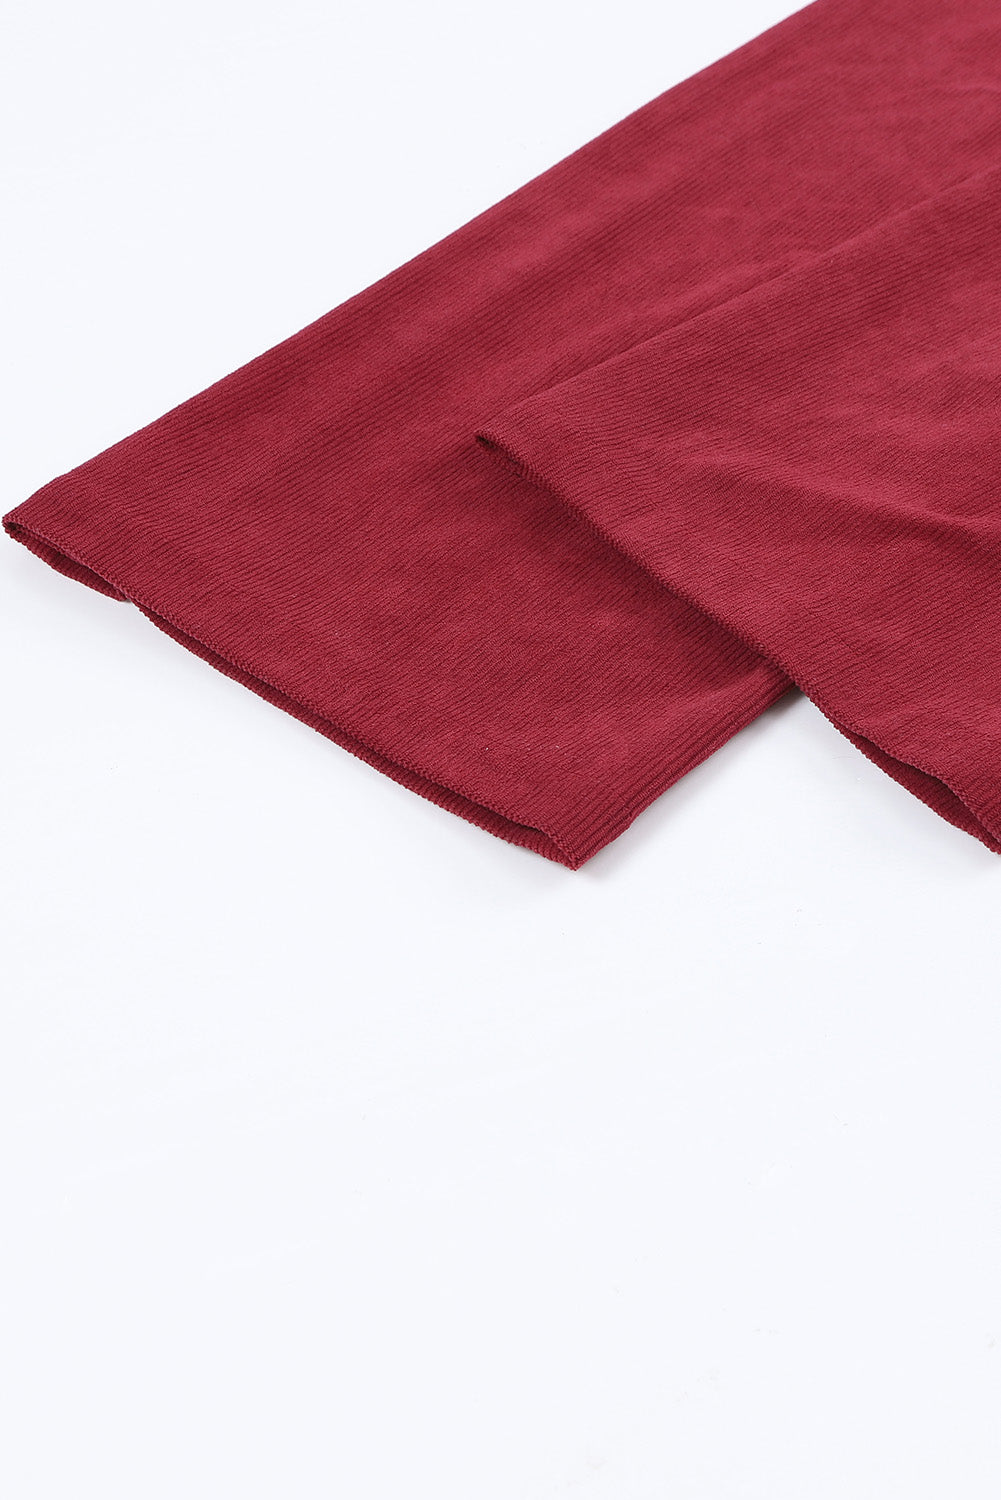 Salopette à bretelles larges en velours côtelé de couleur unie rouge vif